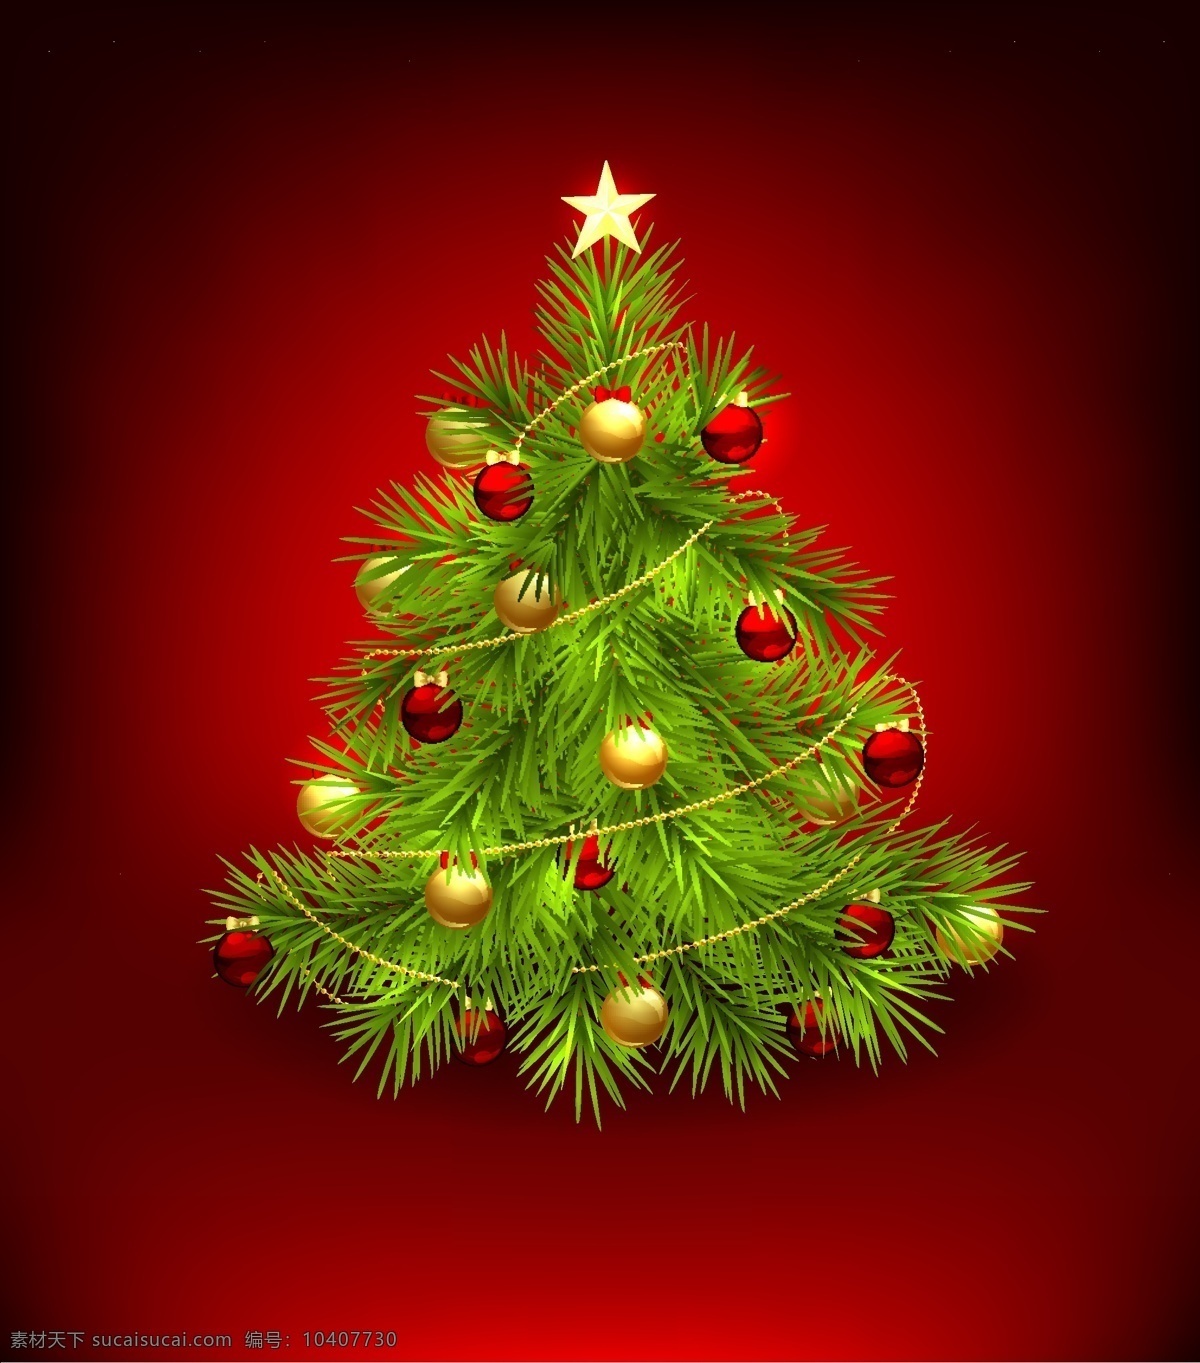 圣诞树 装饰 生动 元素 圣诞 圣诞节 饰品 装饰品 矢量节日 psd圣诞树 节日素材 其他节日